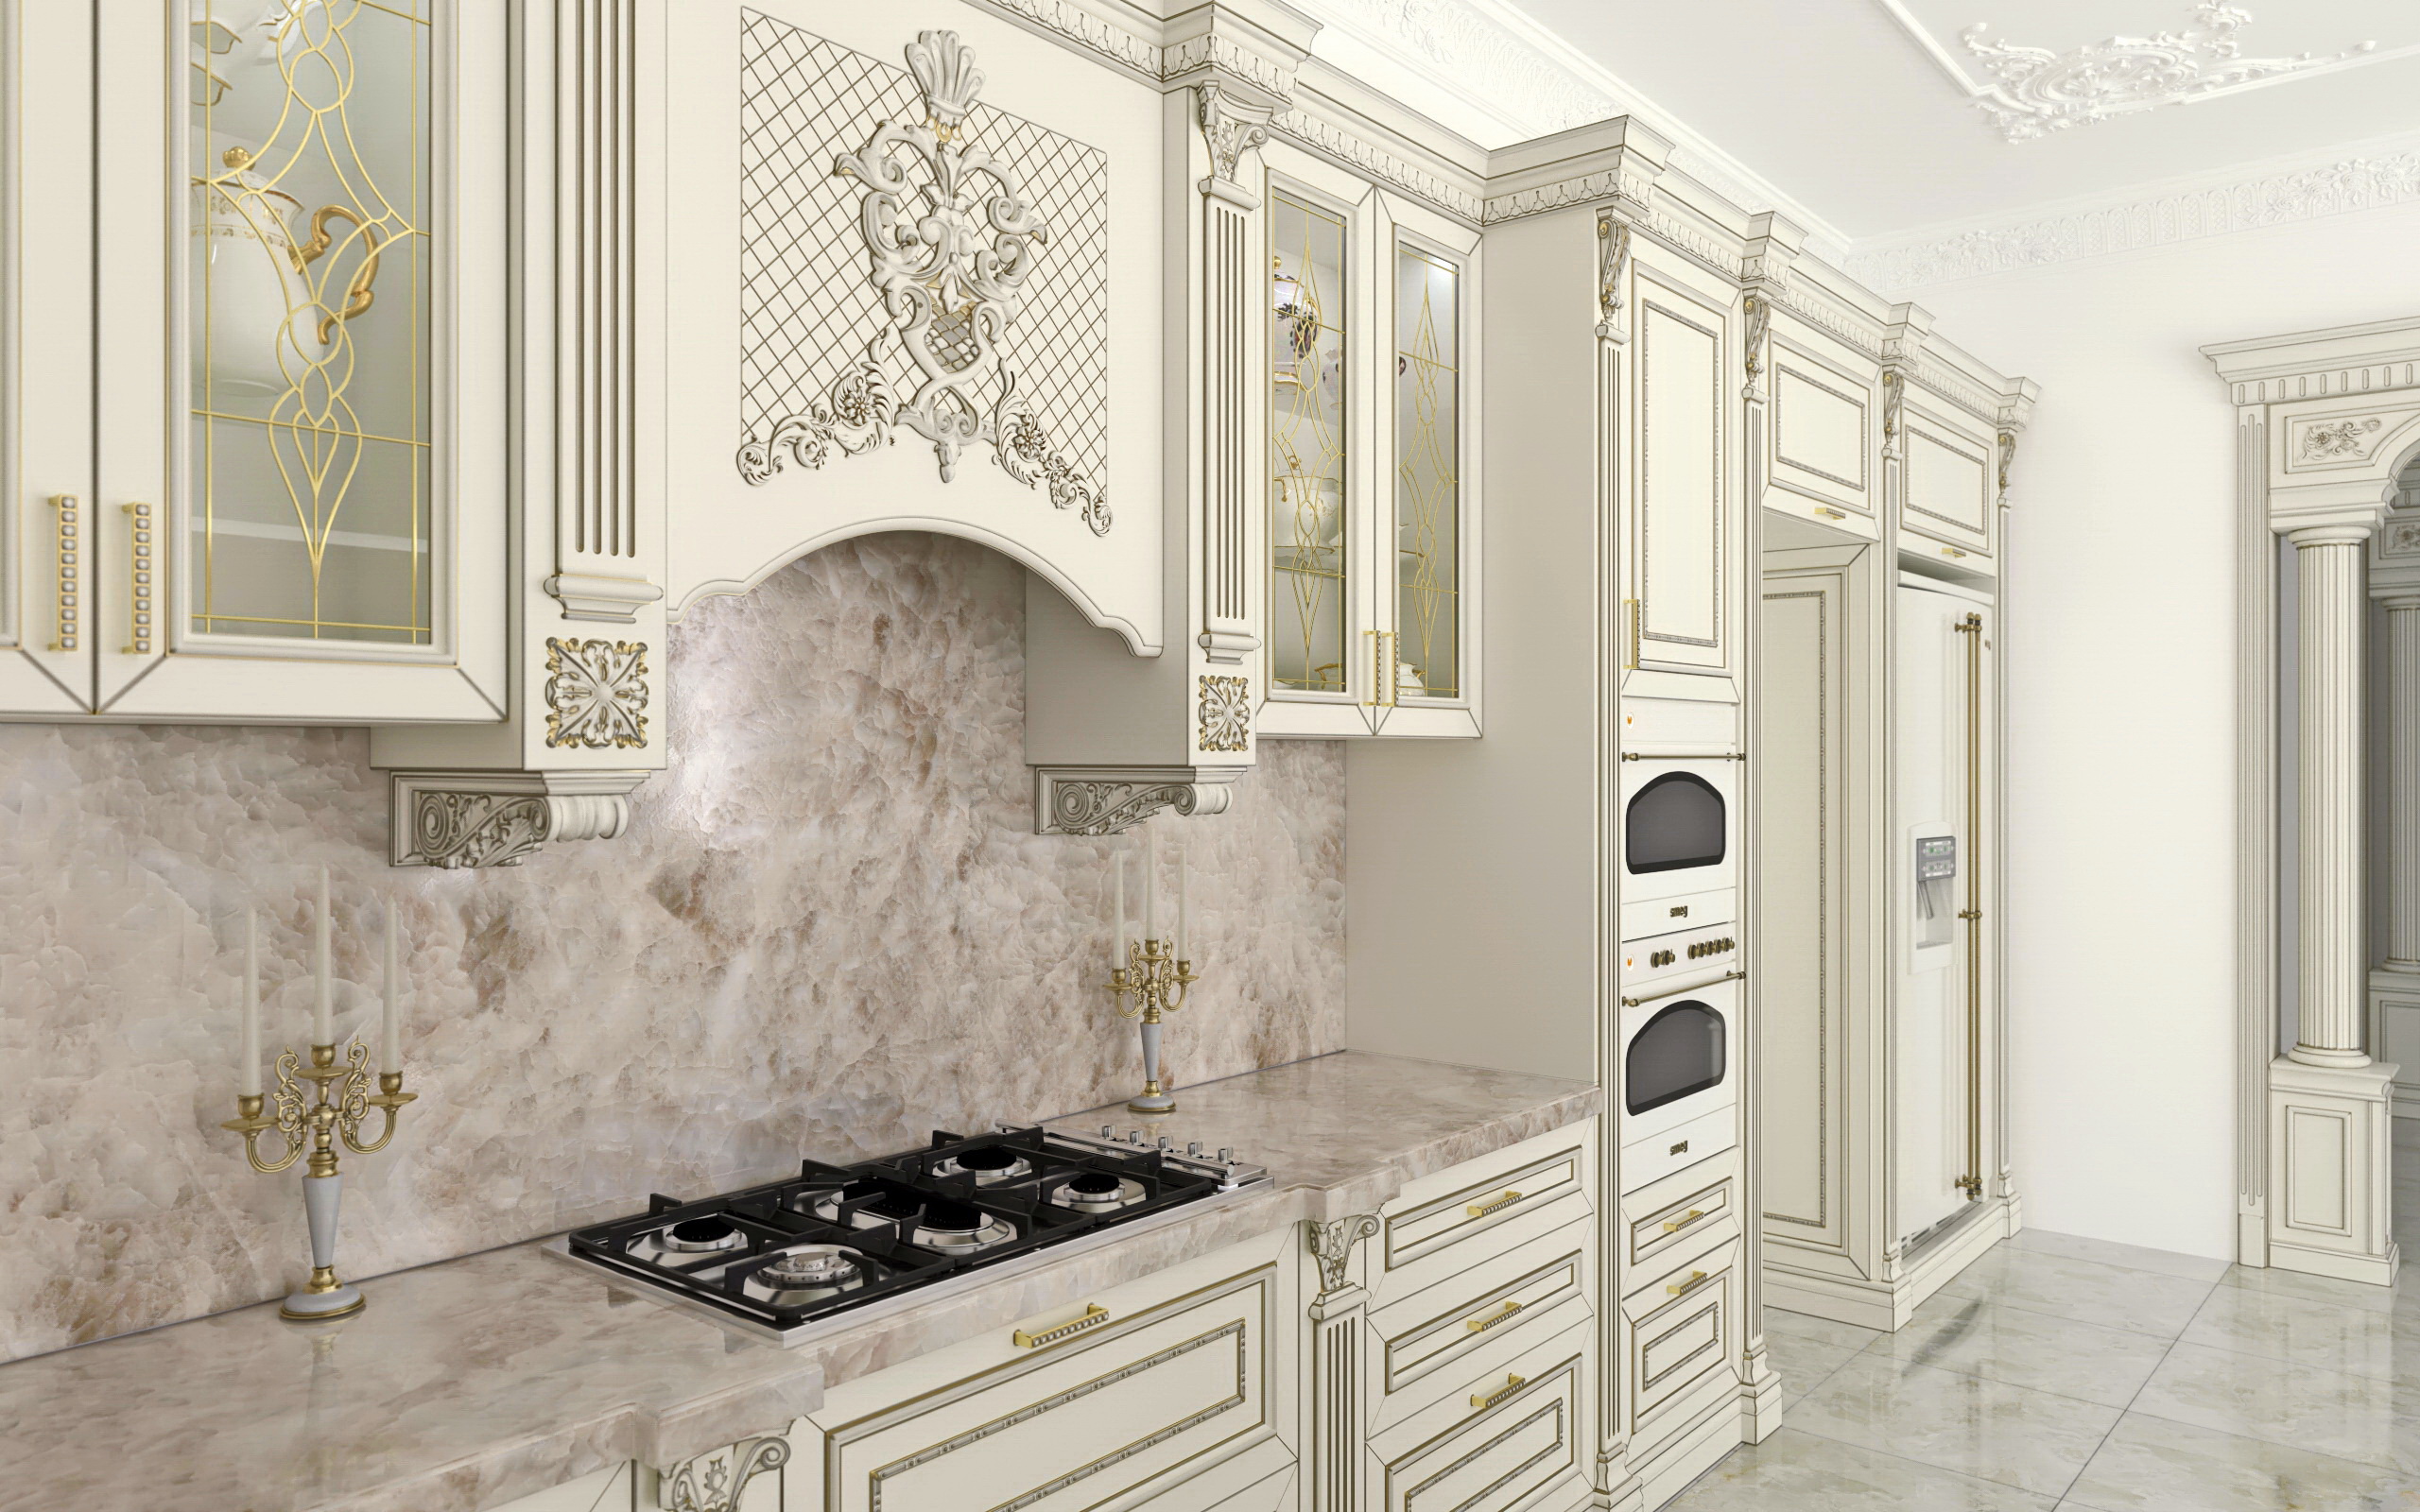 रसोई-सुंदर घर SolidWorks vray 3.0 में प्रस्तुत छवि